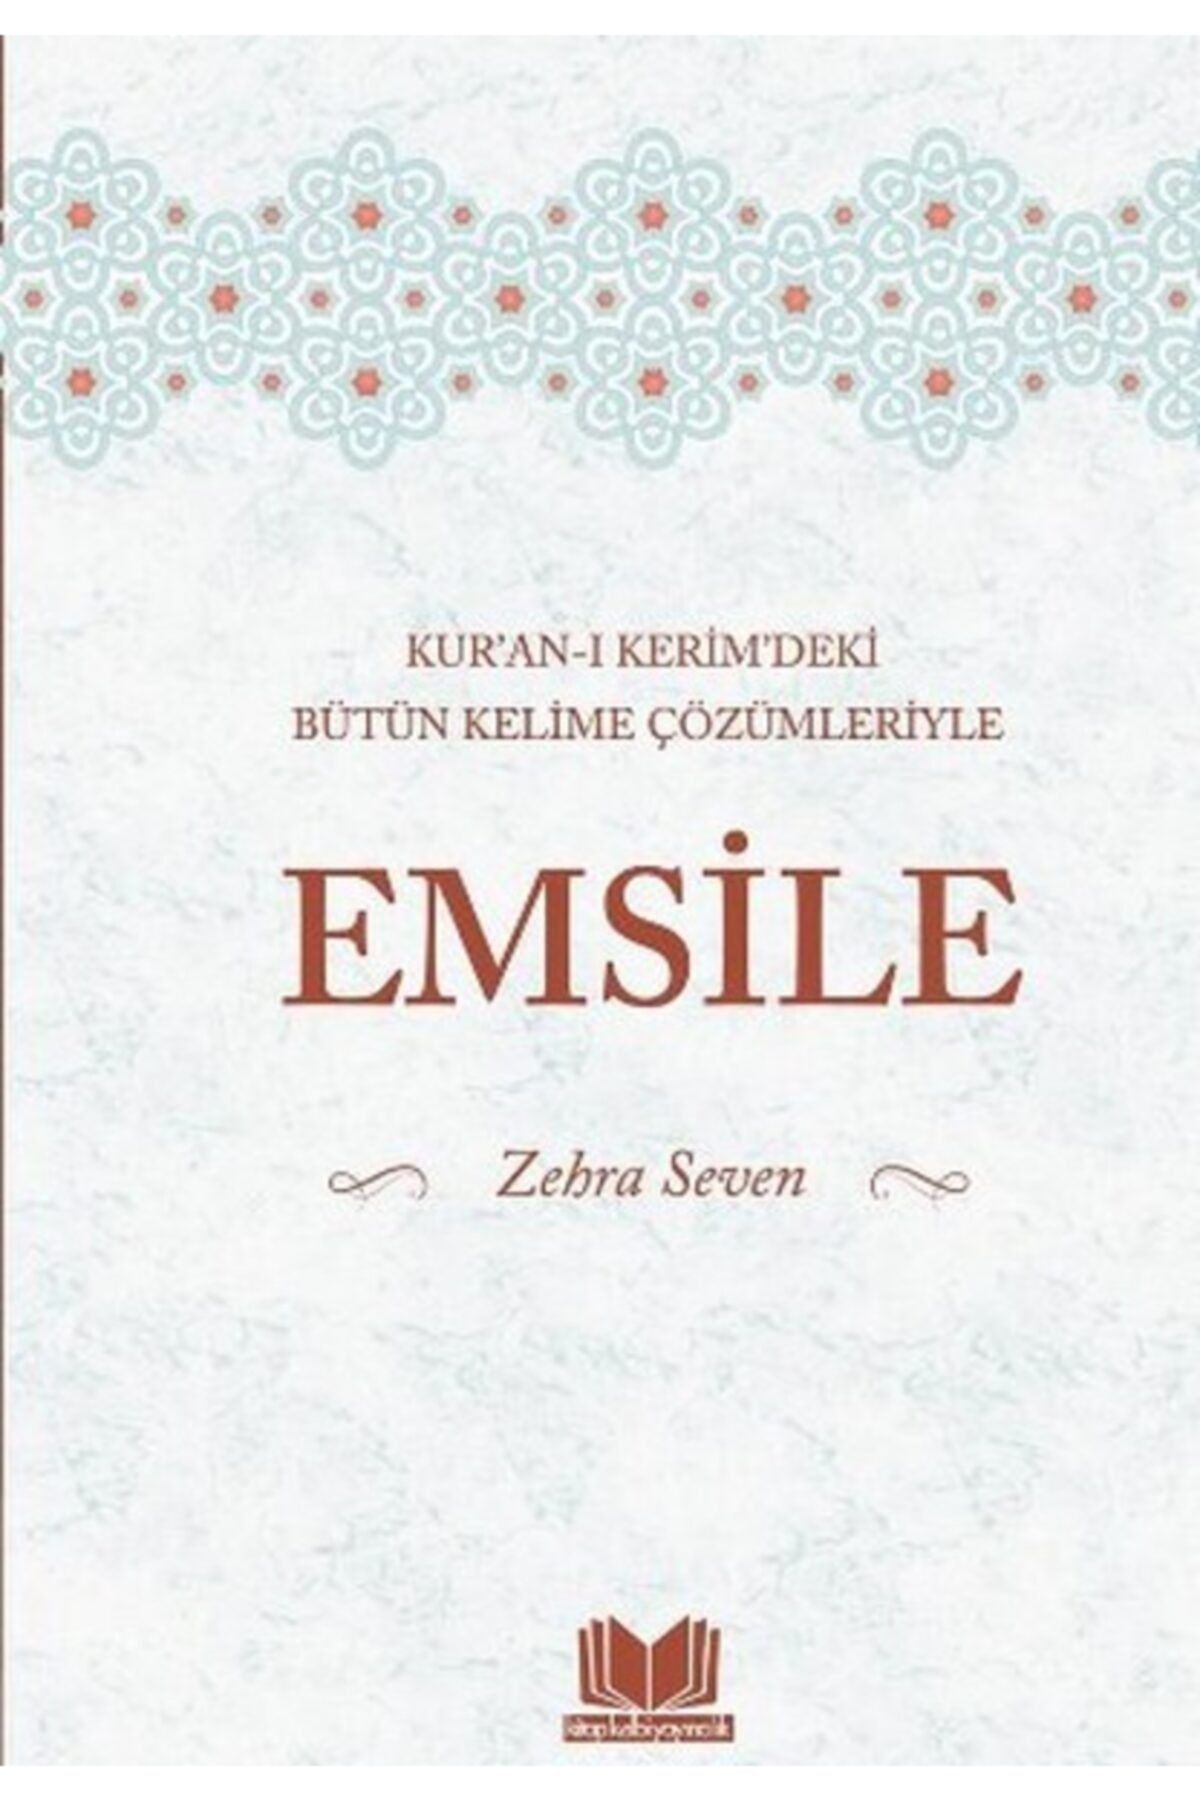 Kitap Kalbi Yayıncılık Emsile - Kur'an-ı Kerim'deki Bütün Kelime Çözümleriyle - Zehra Seven